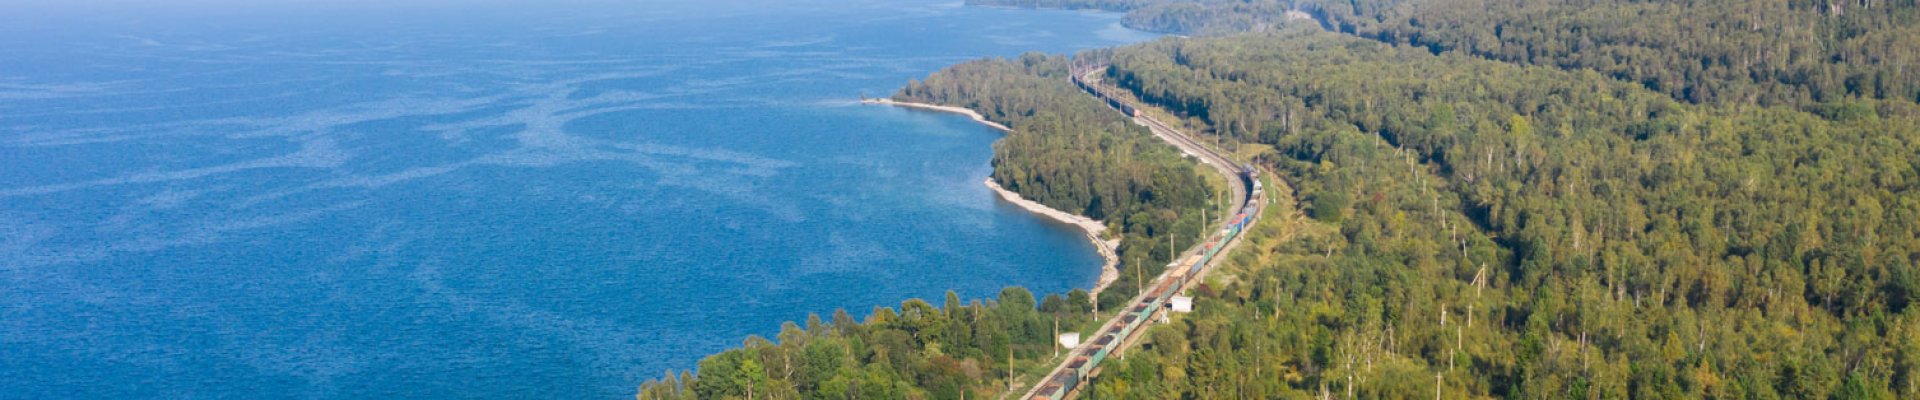 Blick von oben auf die Transsibirische Eisenbahnstrecke am Baikalsee